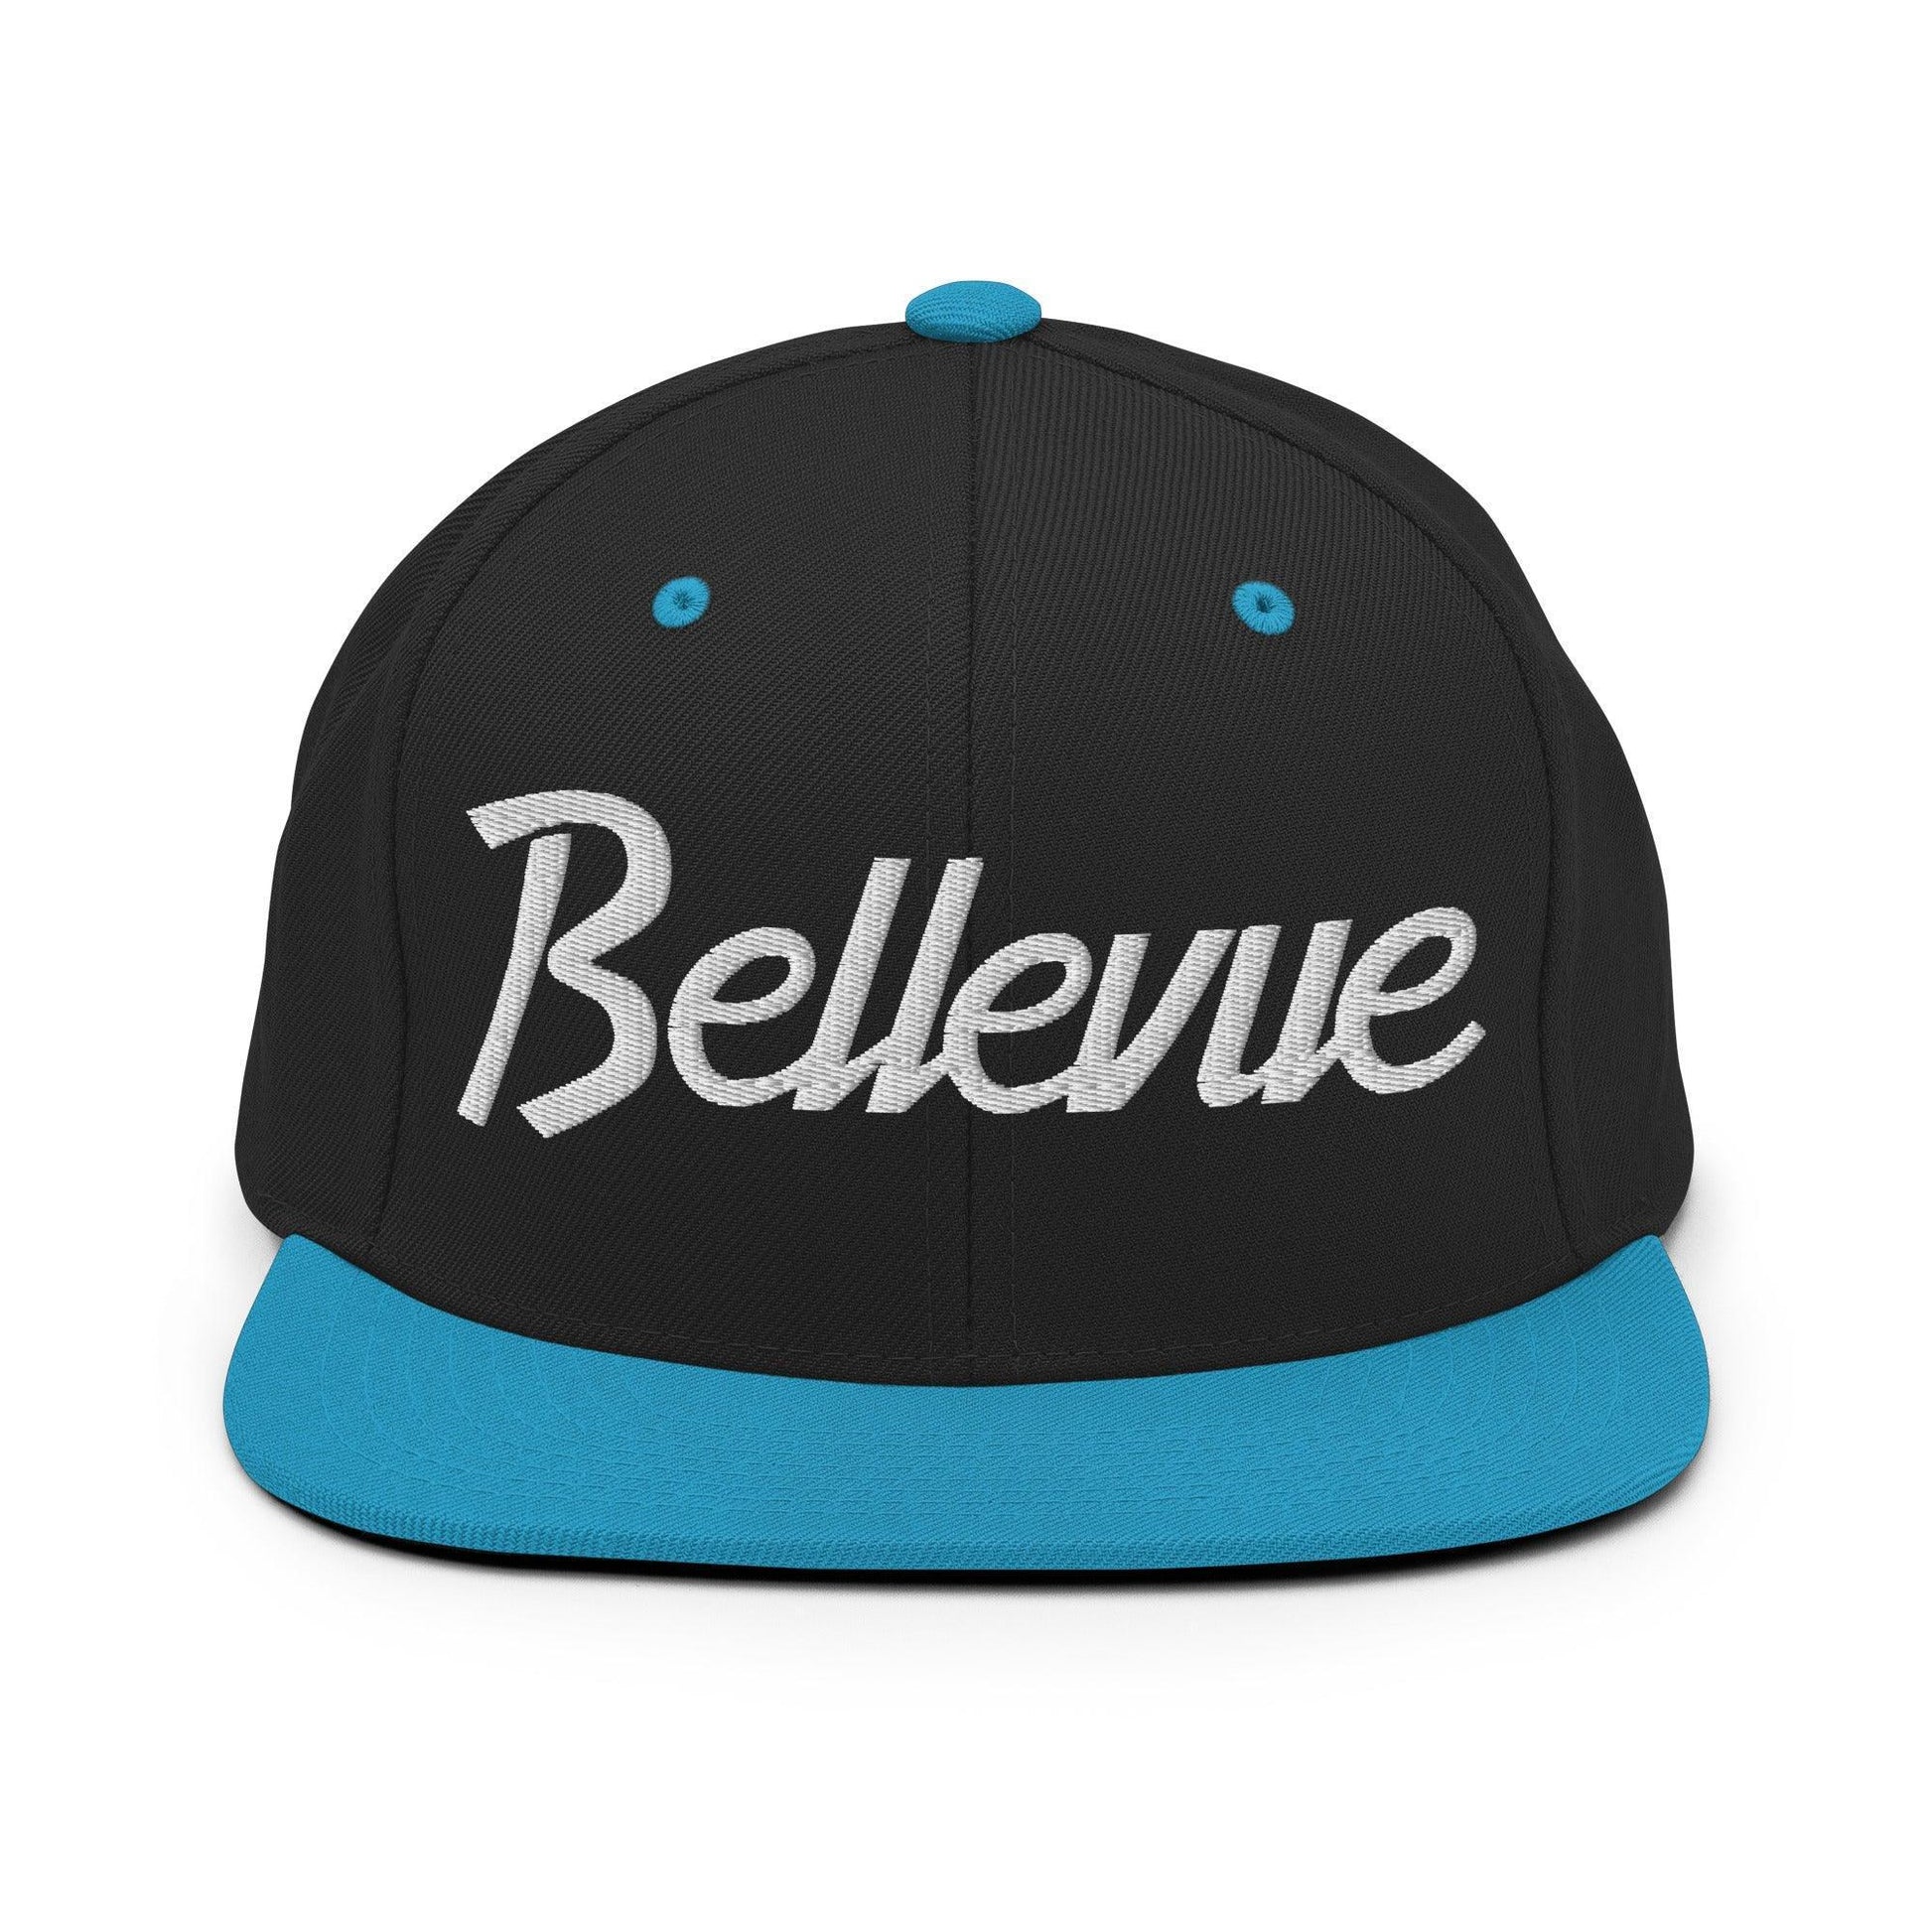 Bellevue Script Snapback Hat Black/ Teal